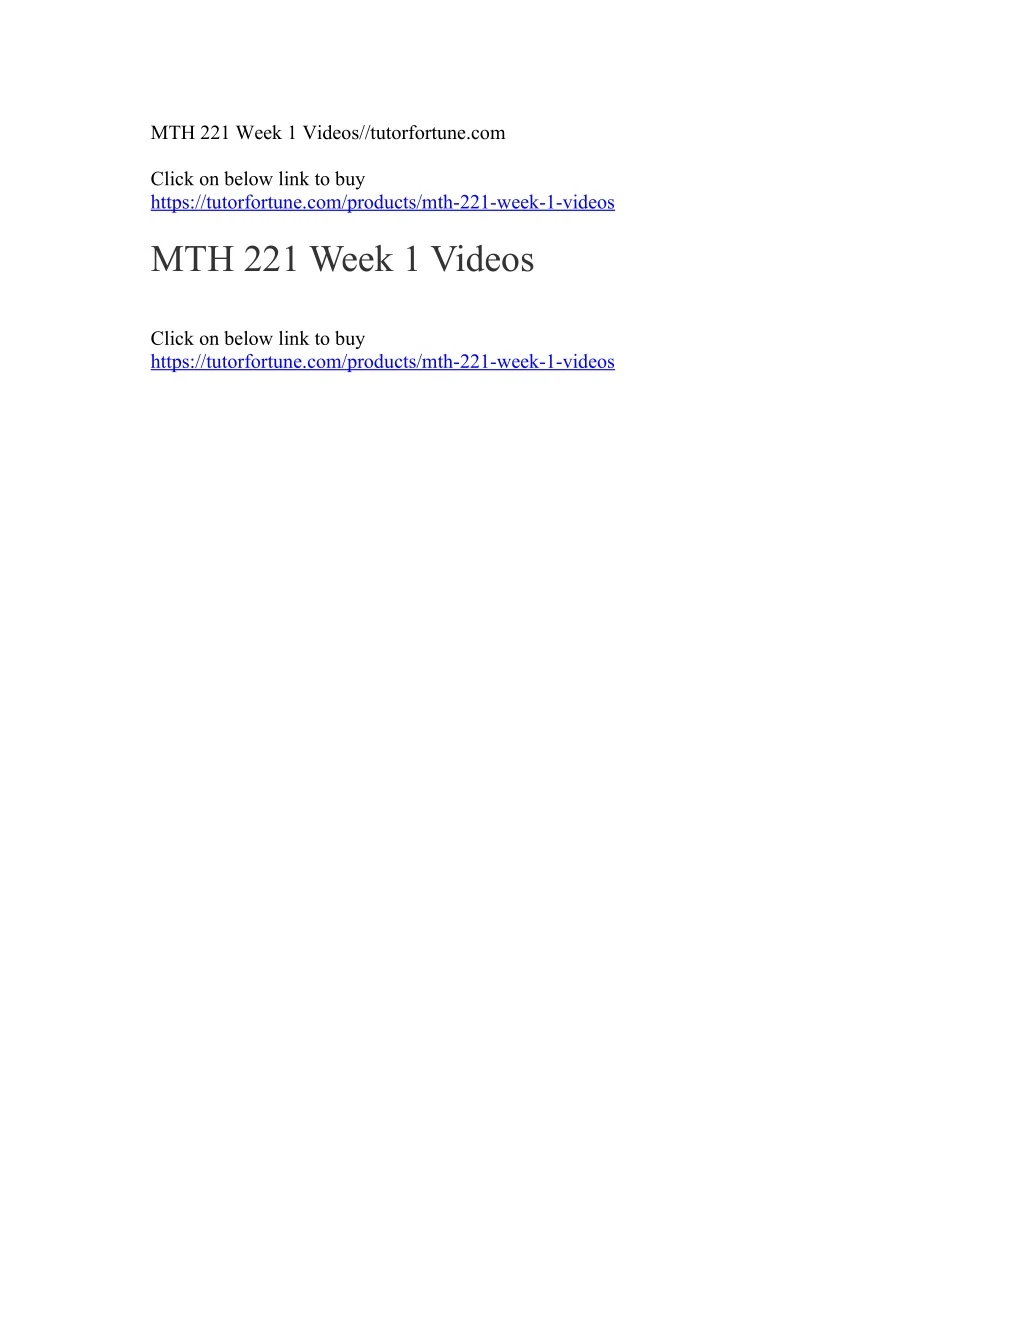 mth 221 week 1 videos tutorfortune com